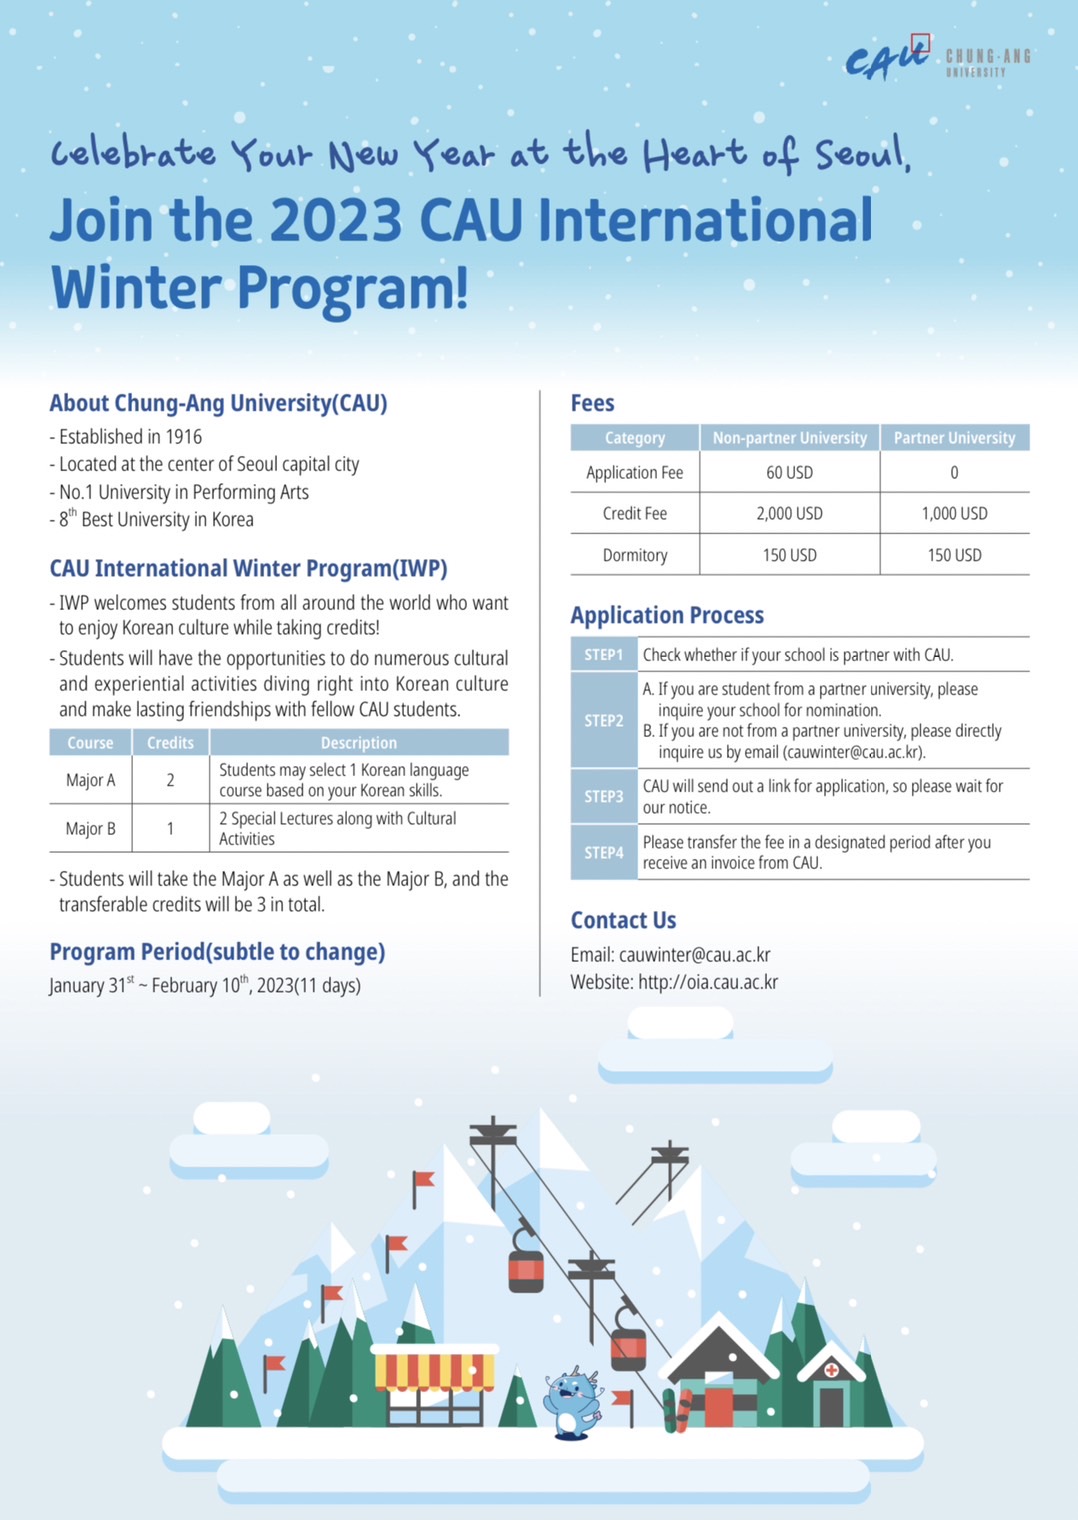 โครงการแลกเปลี่ยนระยะสั้น “Chung-Ang University International Winter Program 2023” (หมดเขต 23 พ.ย. 65)